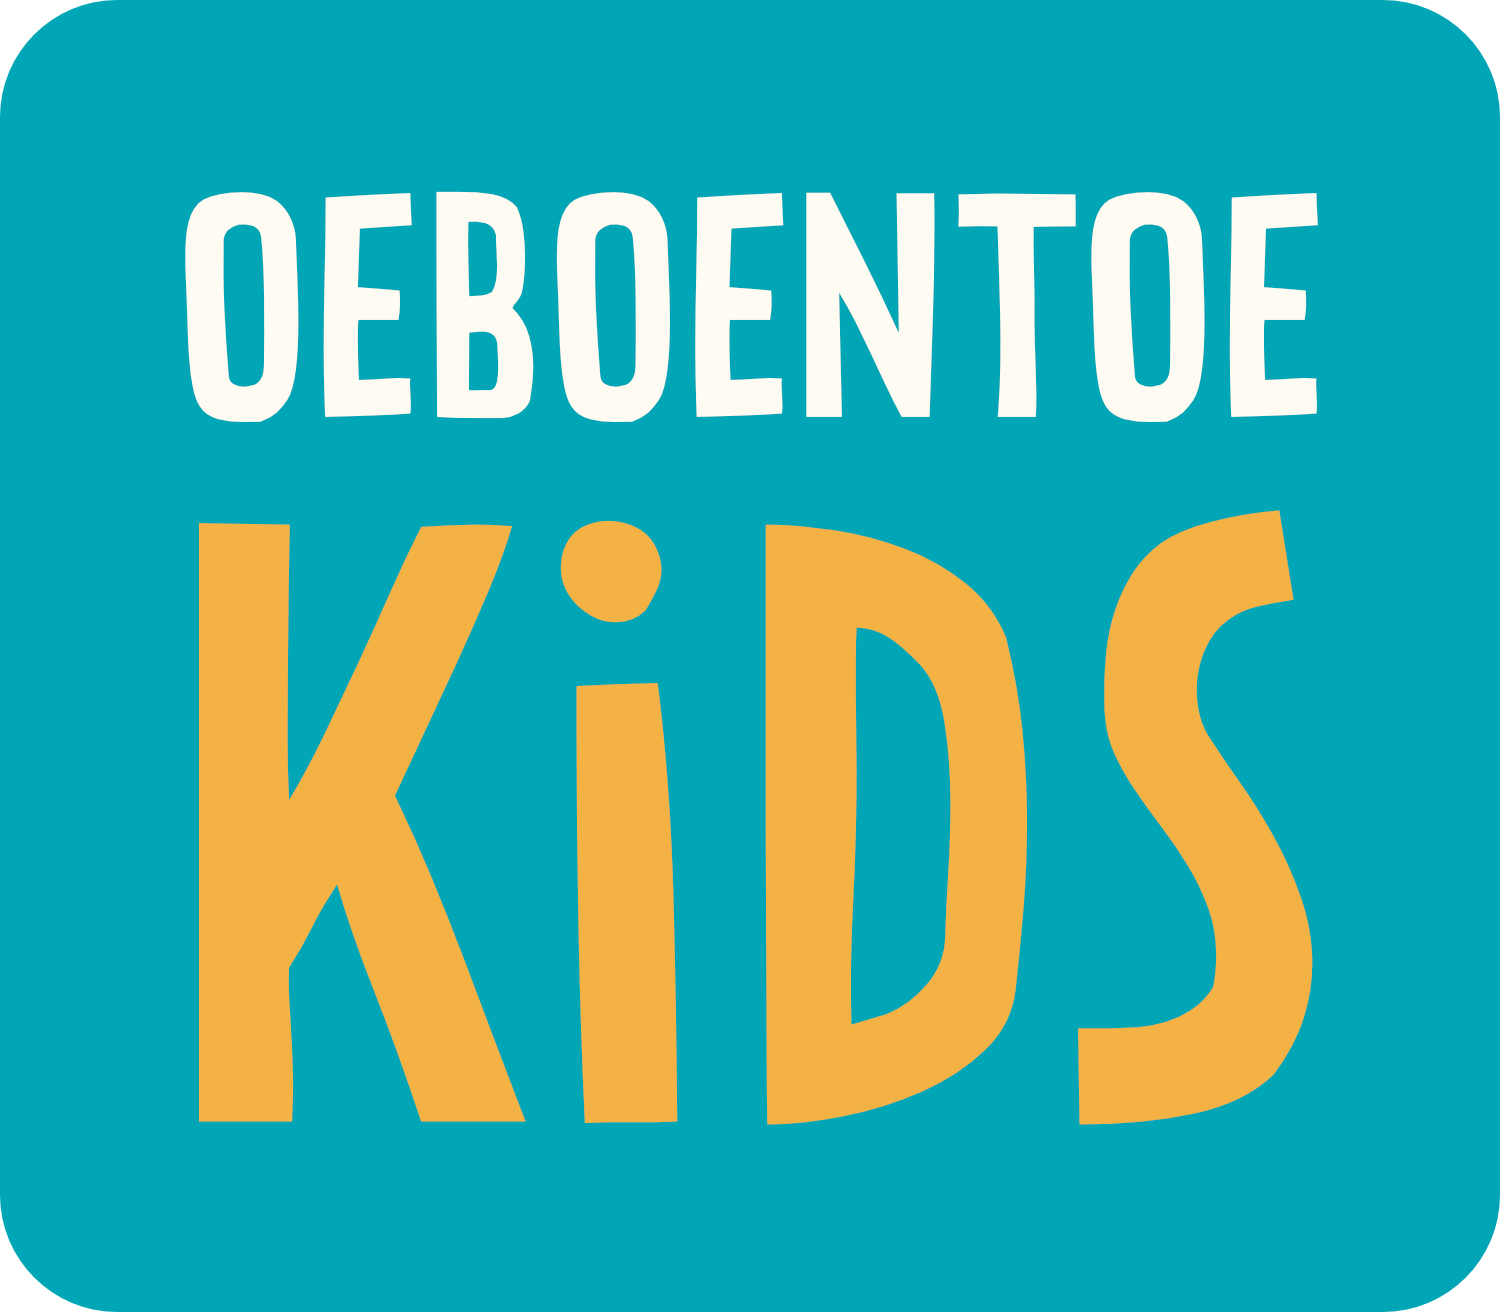 Oeboentoe Kids